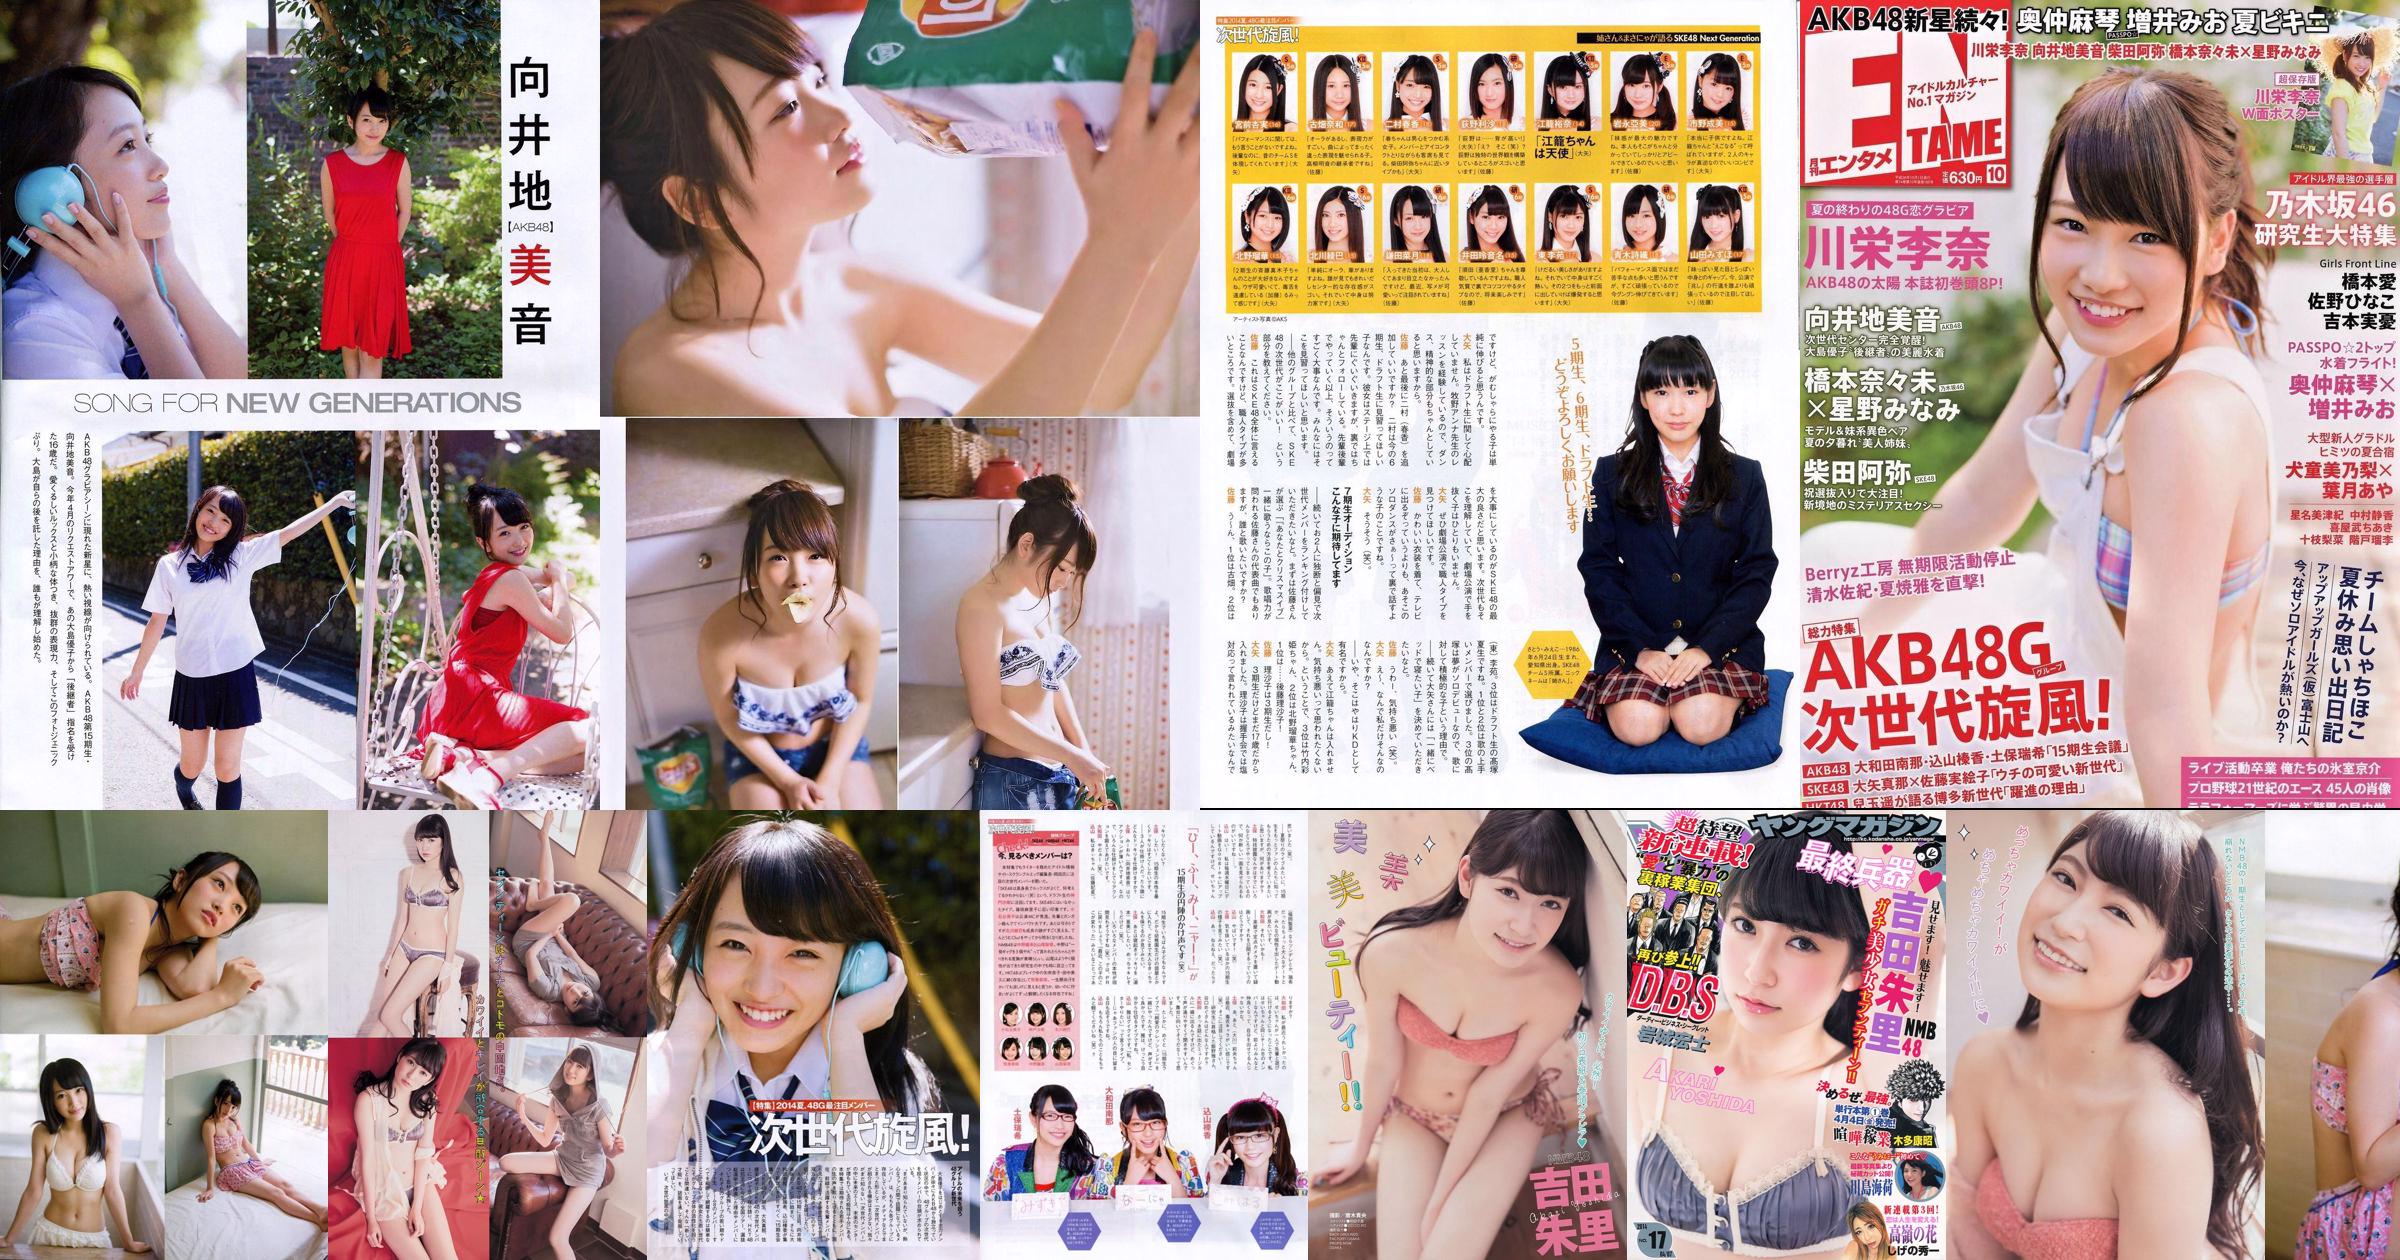 [Young Magazine] Akari Yoshida Umika Kawashima 2014 Nr. 17 Foto No.d82106 Seite 1